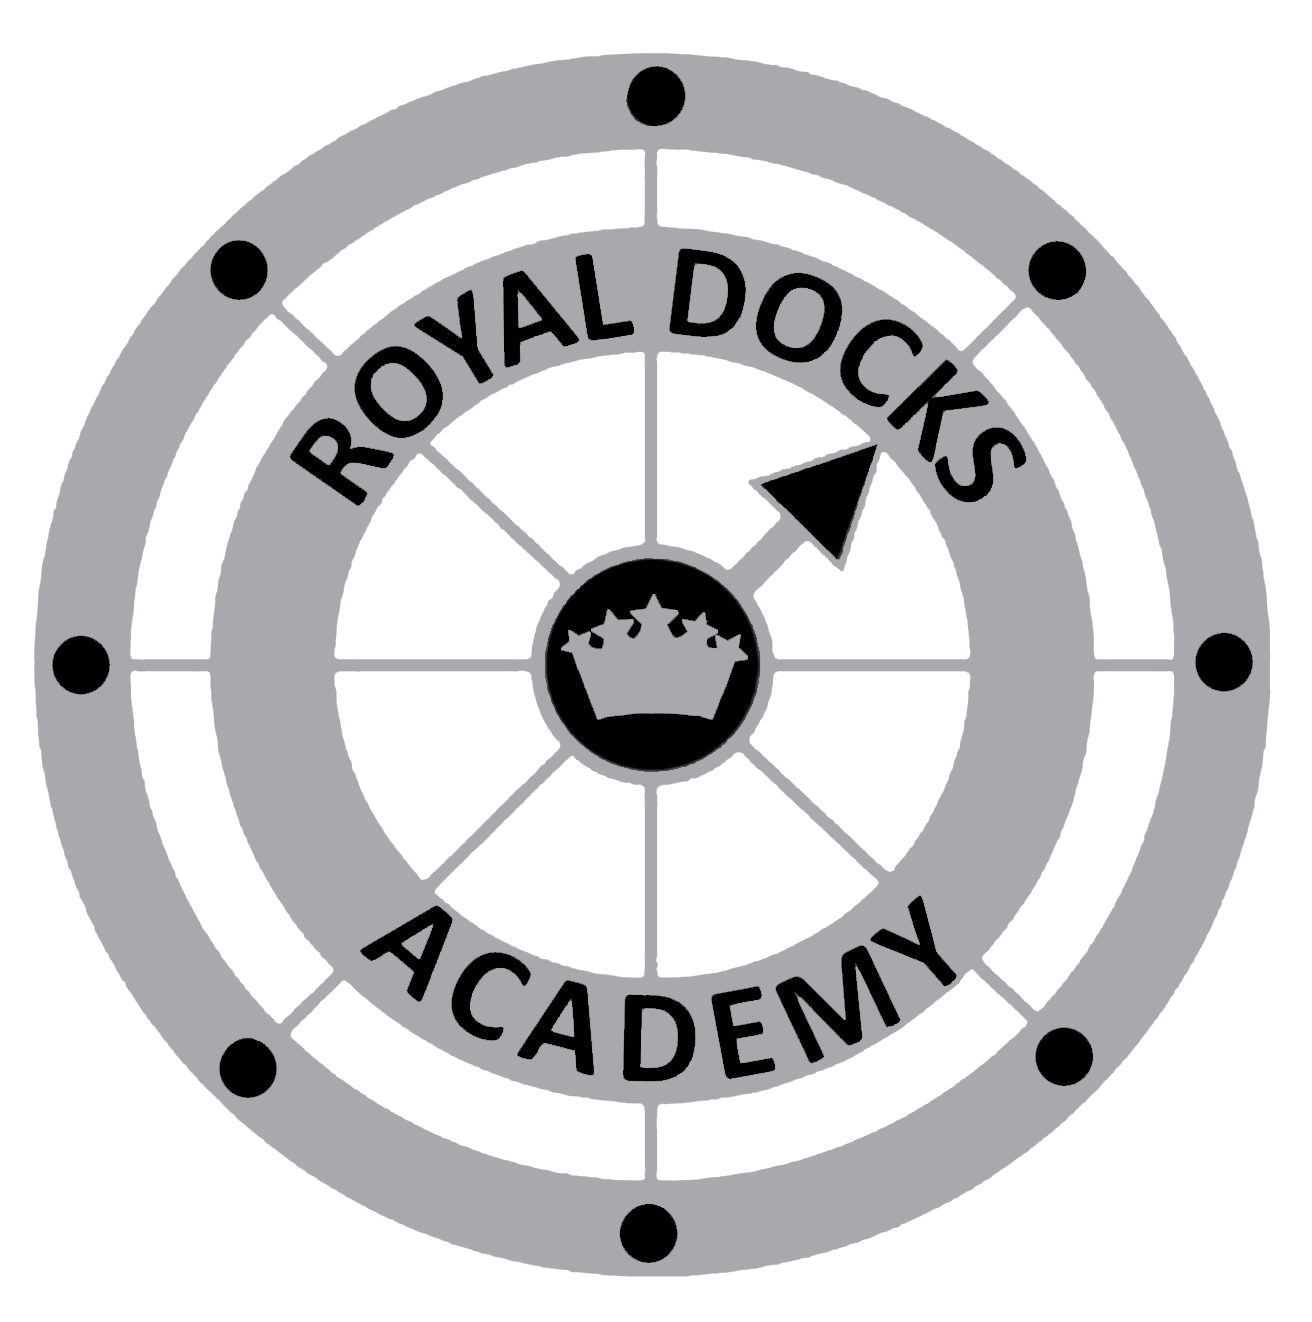 Royal Docks Academy